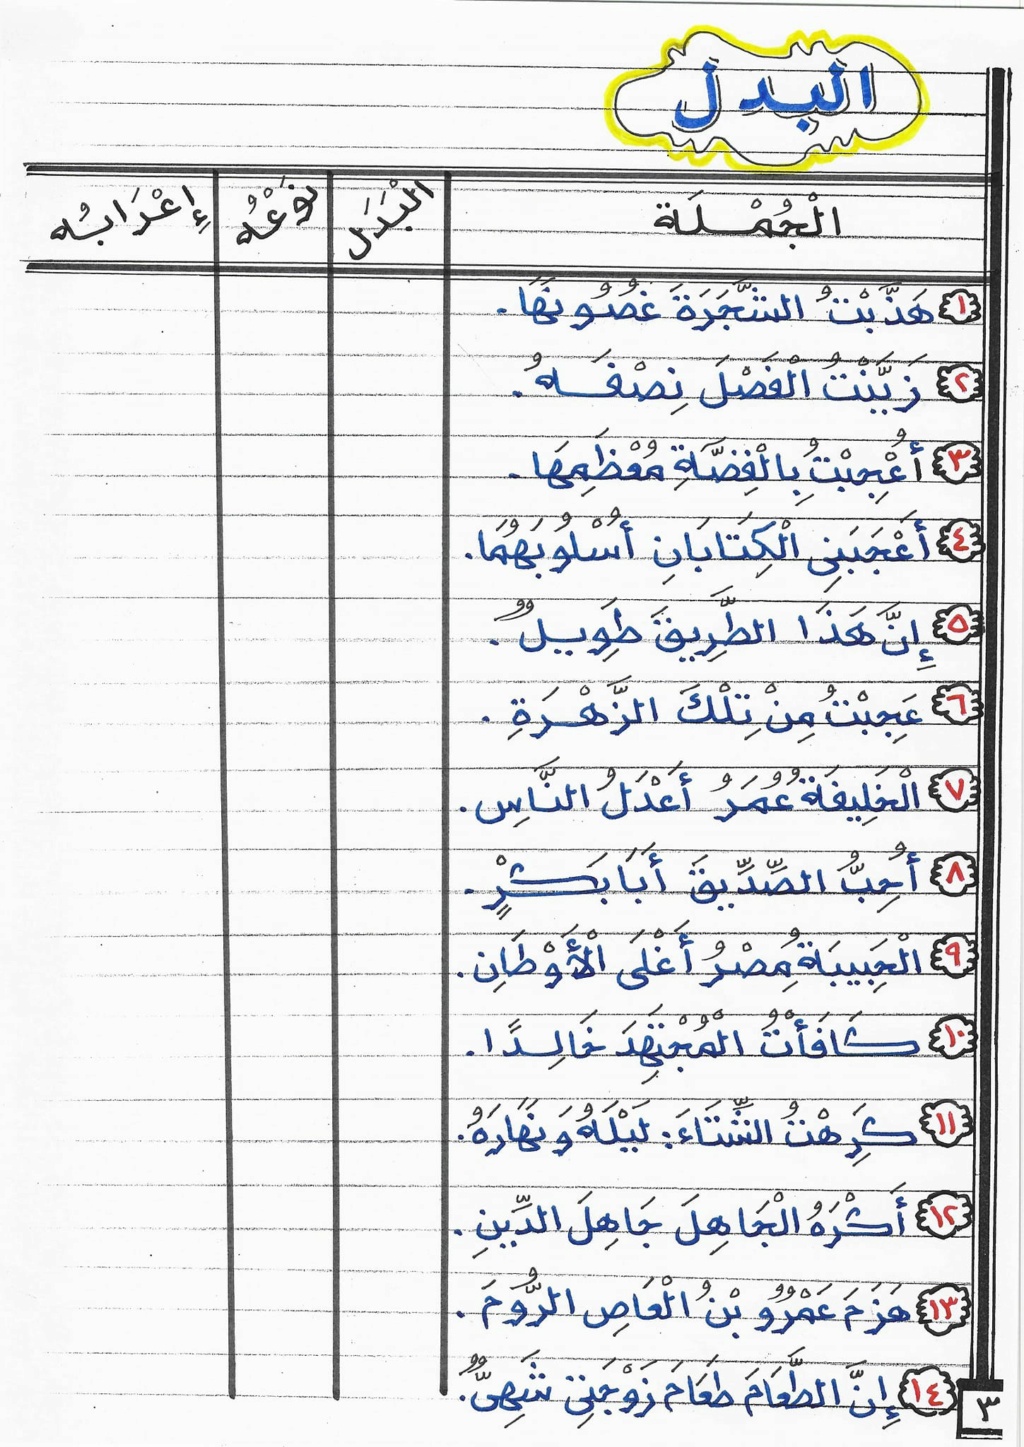 بوكليت مراجعة نحو تالتة إعدادي ترم أول أستاذ الحسيني عبدالمجيد 3306